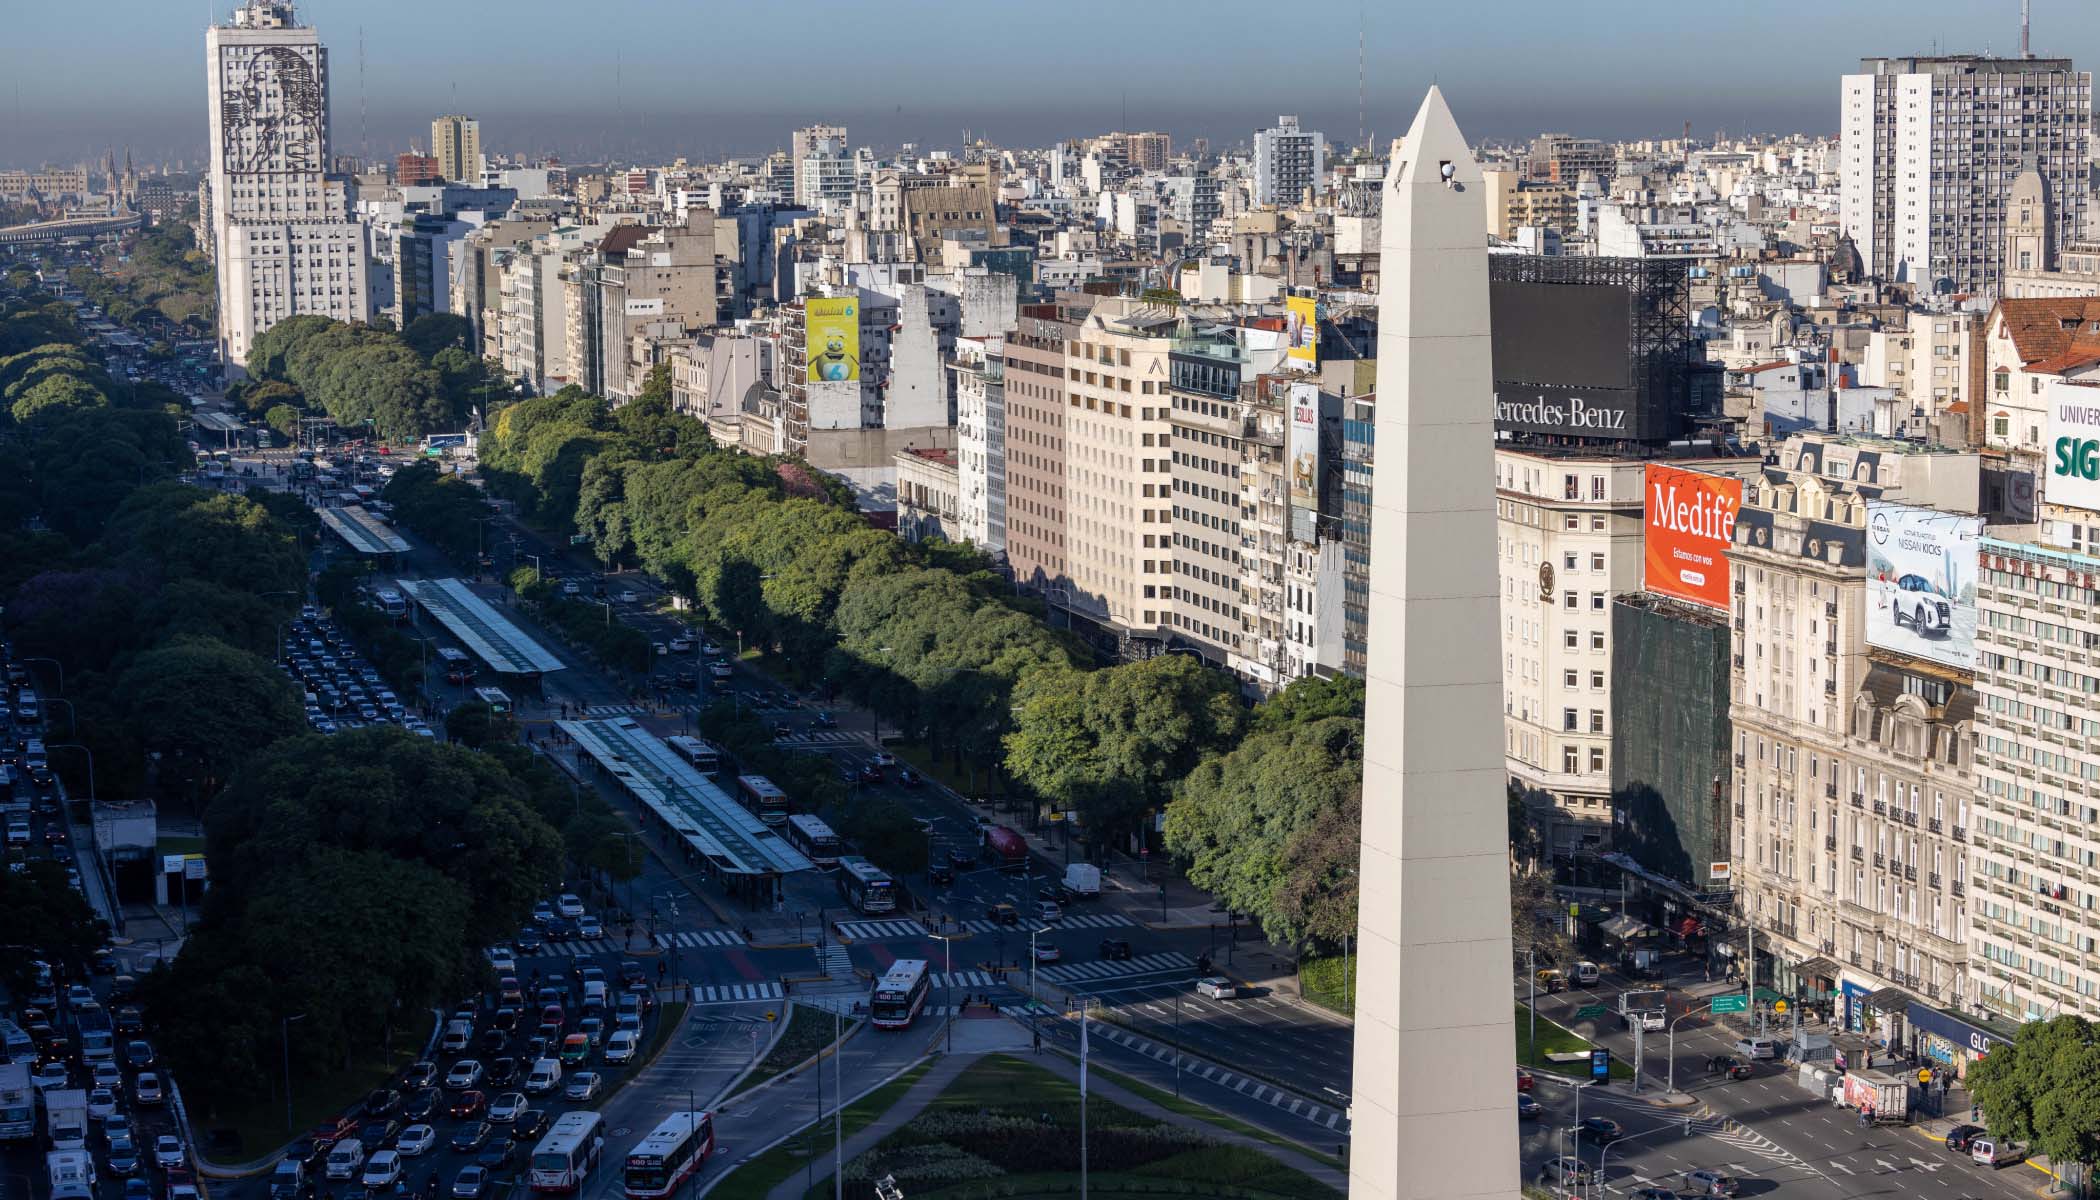 Paisaje de Buenos Aires (Argentina), con edificios y un monumento llamado el Obelisco de Buenos Aires.